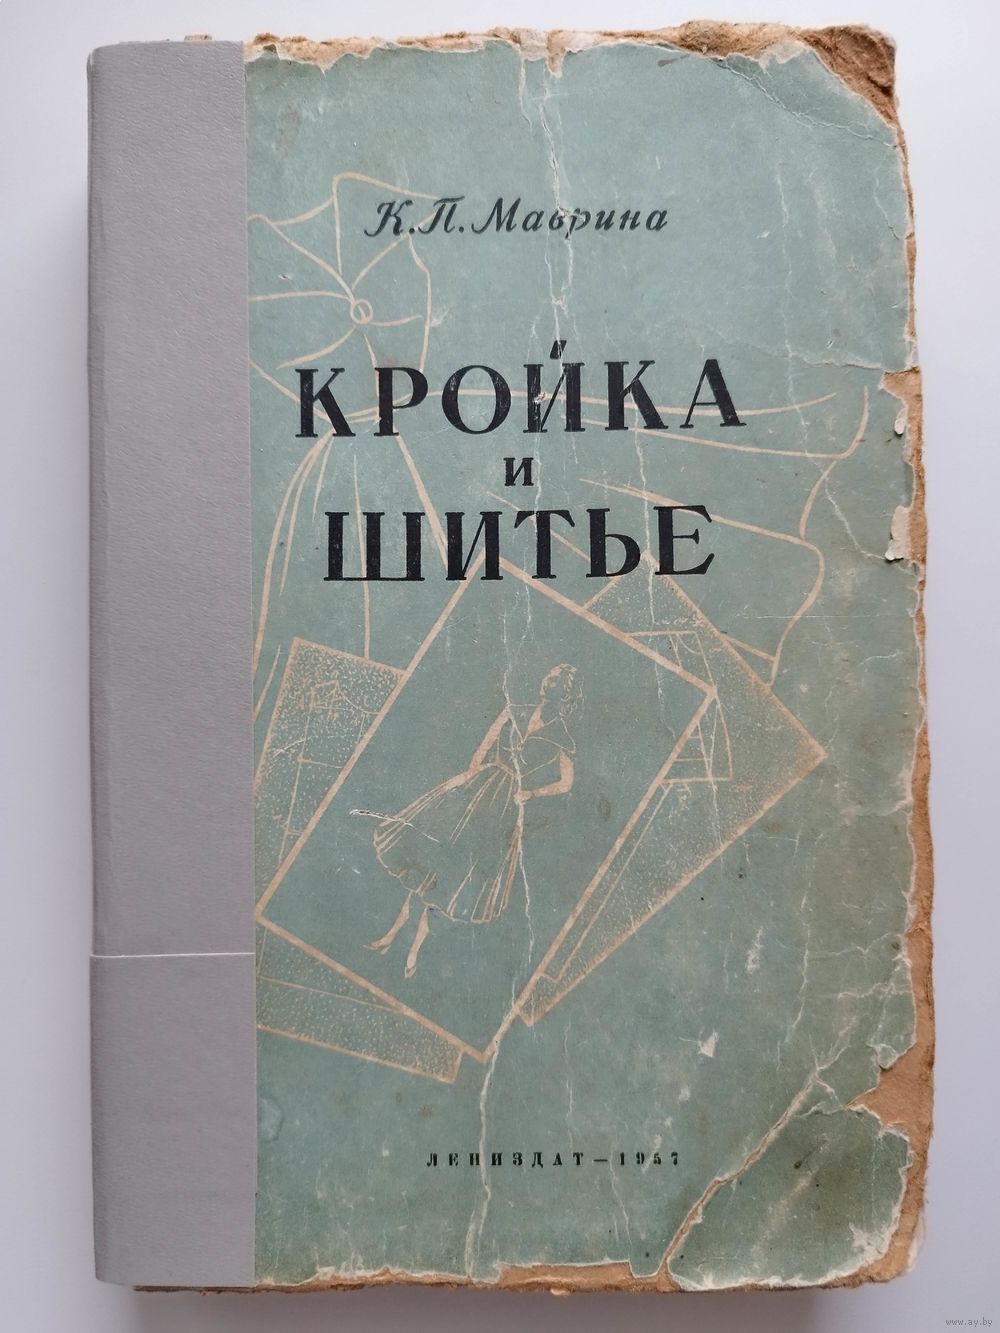 Кройка и шитье. Маврина К. П. - 1957